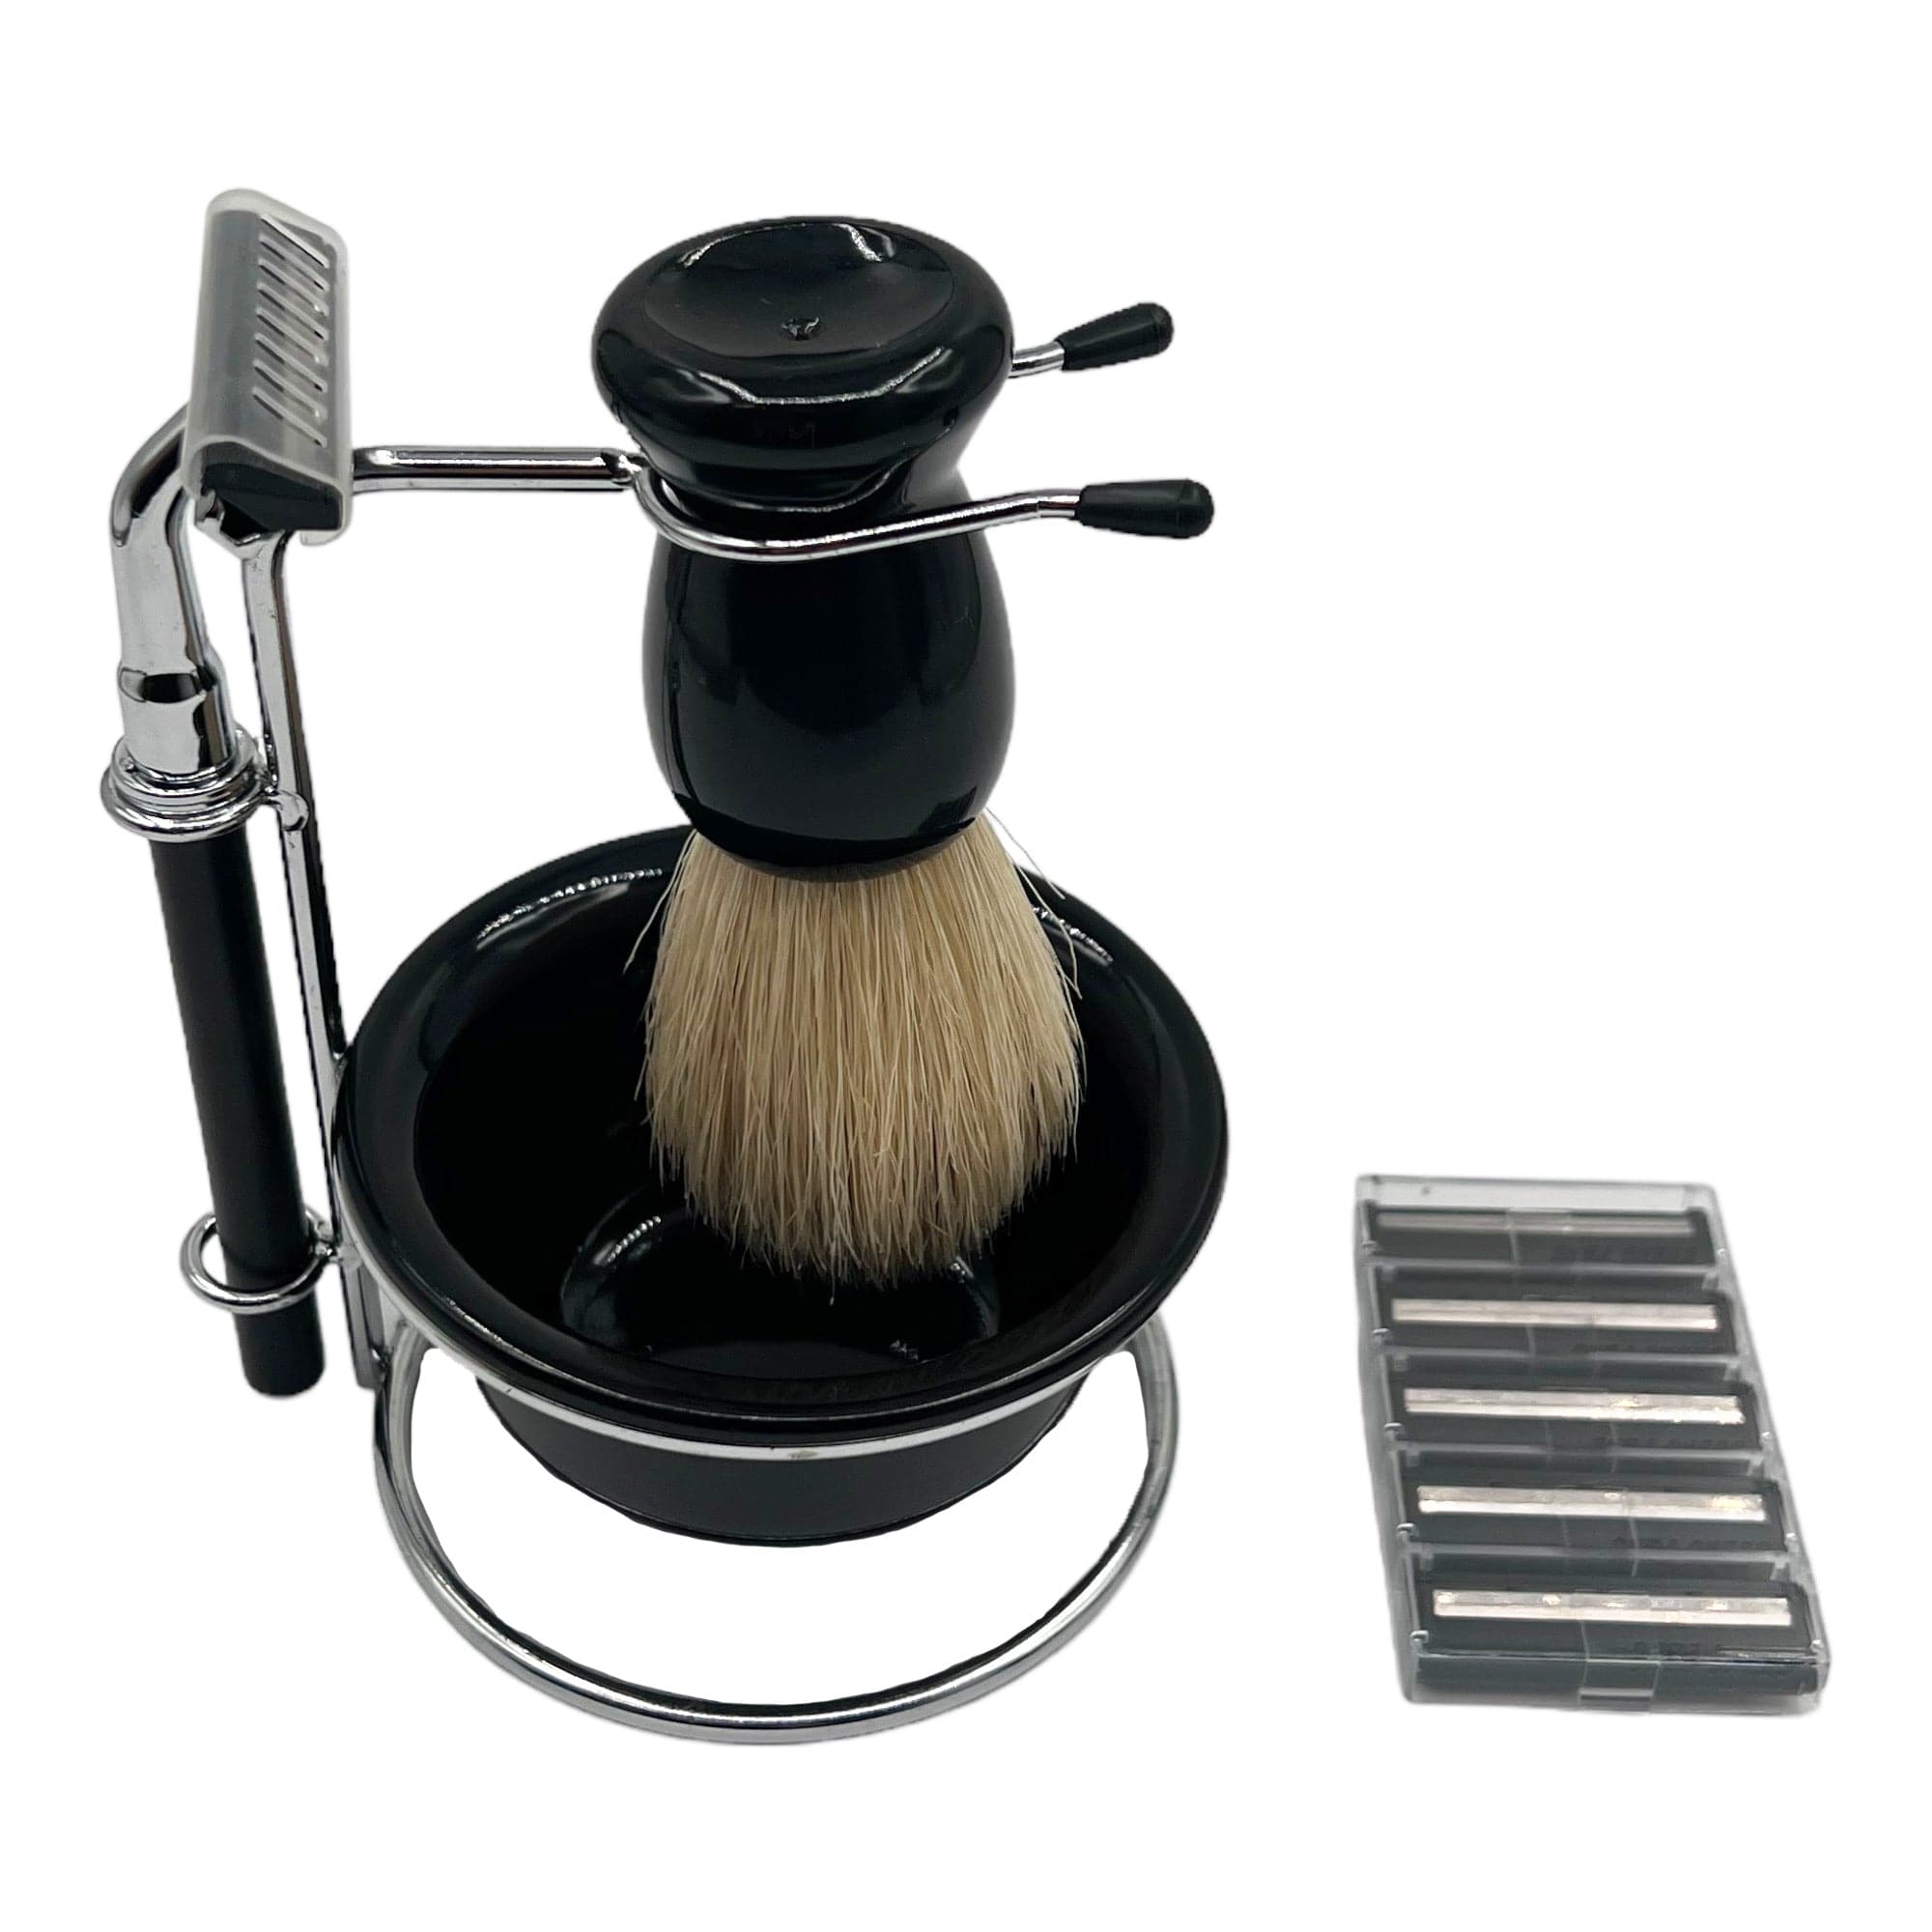 Eson - Shaving Kit Razor Brush Bowl Stand Holder